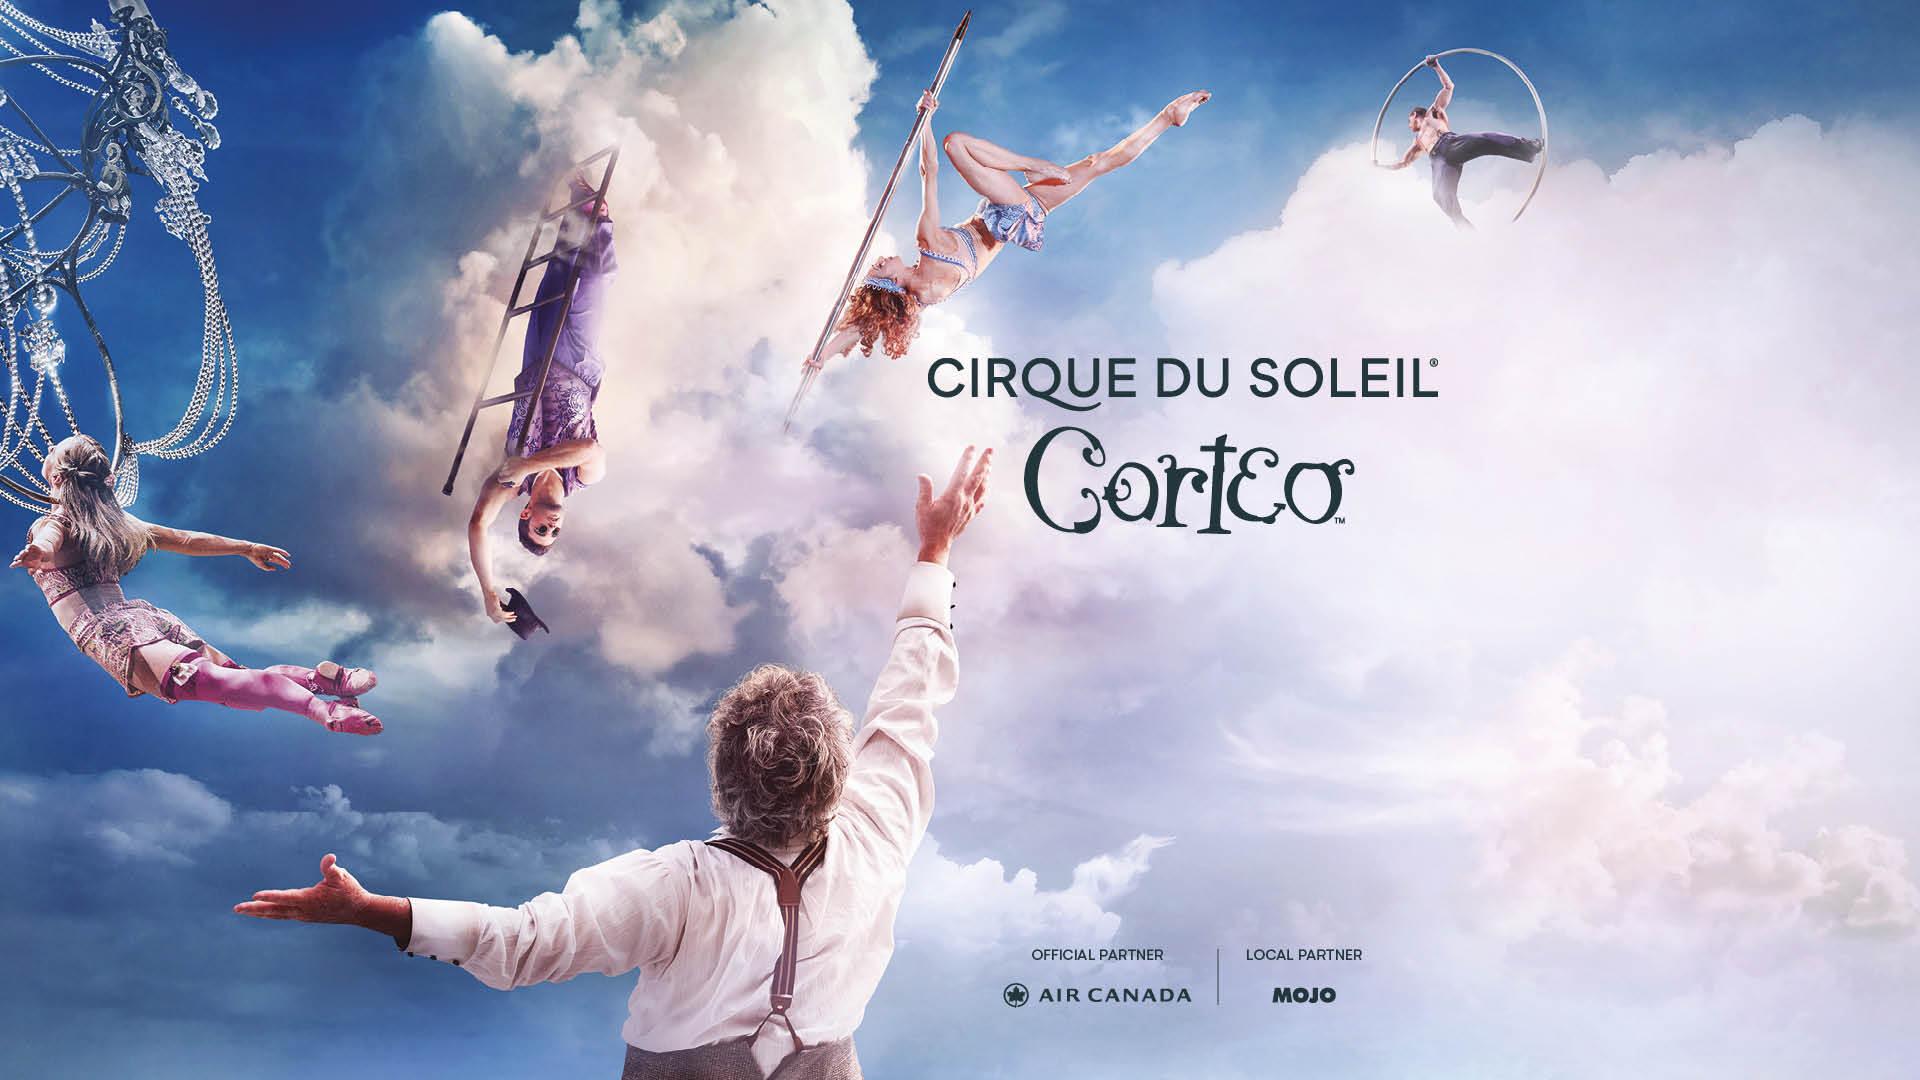 Cirque du Soleil - CORTEO